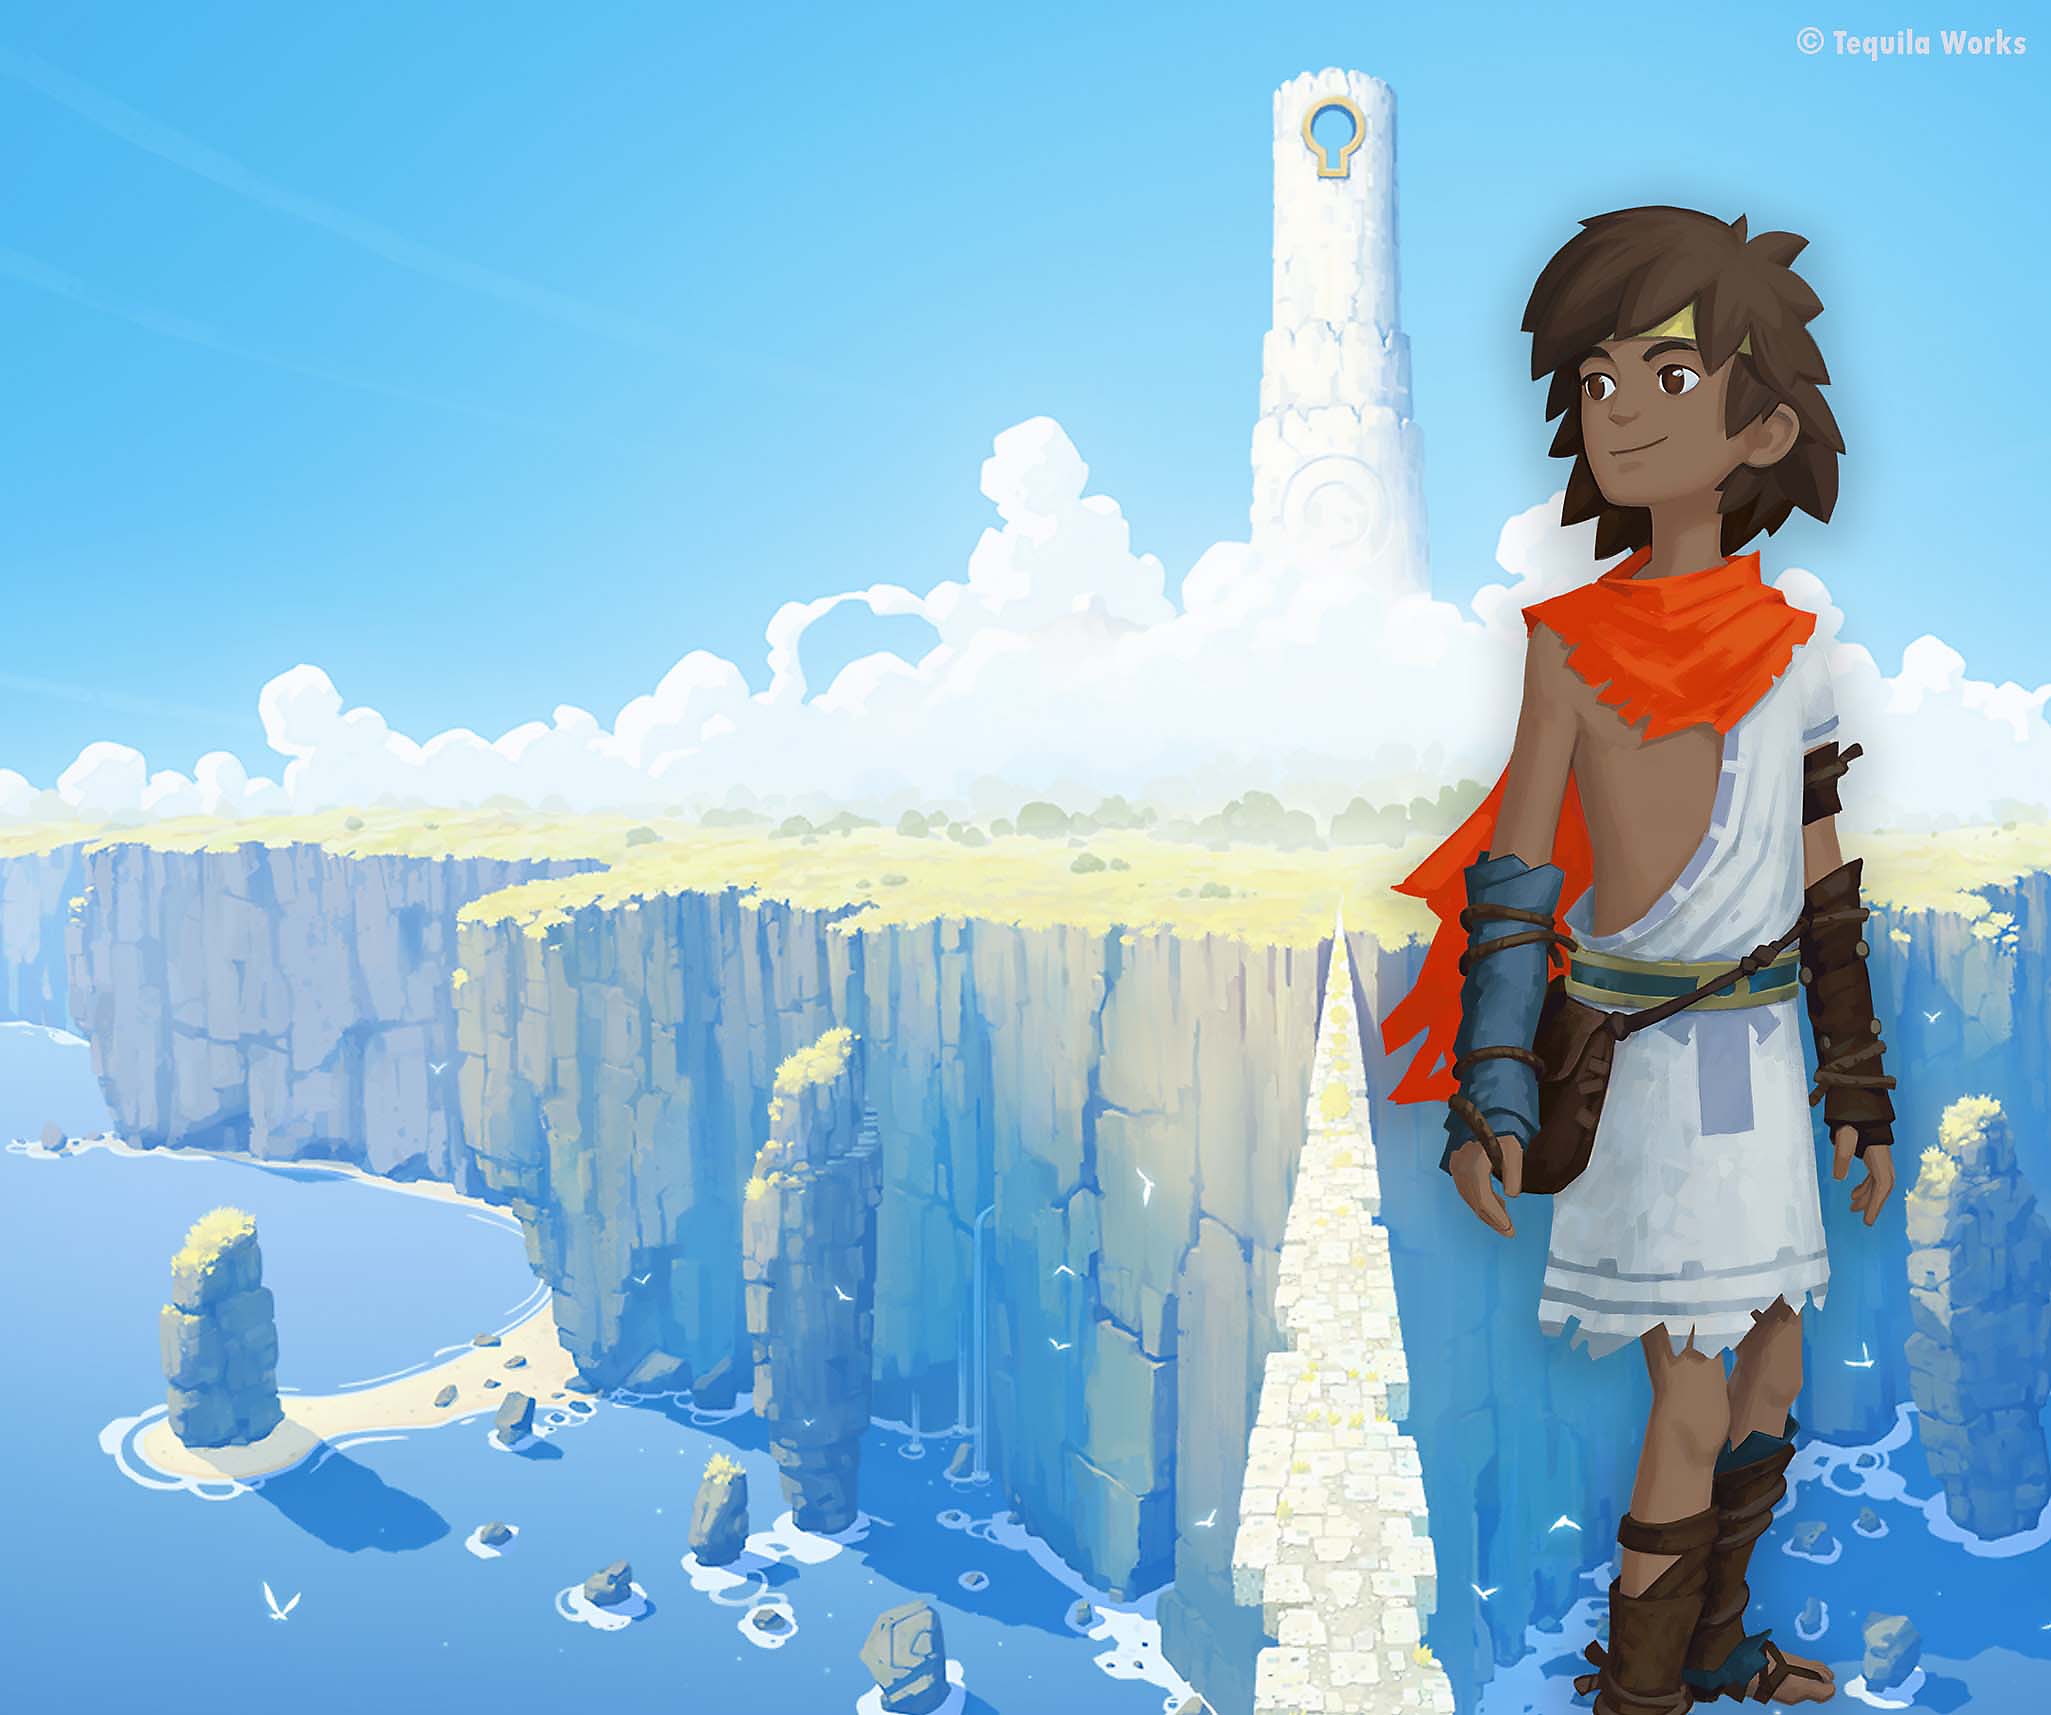 Image de RiME - personnage principal superposé sur une immense île couverte de nuages.